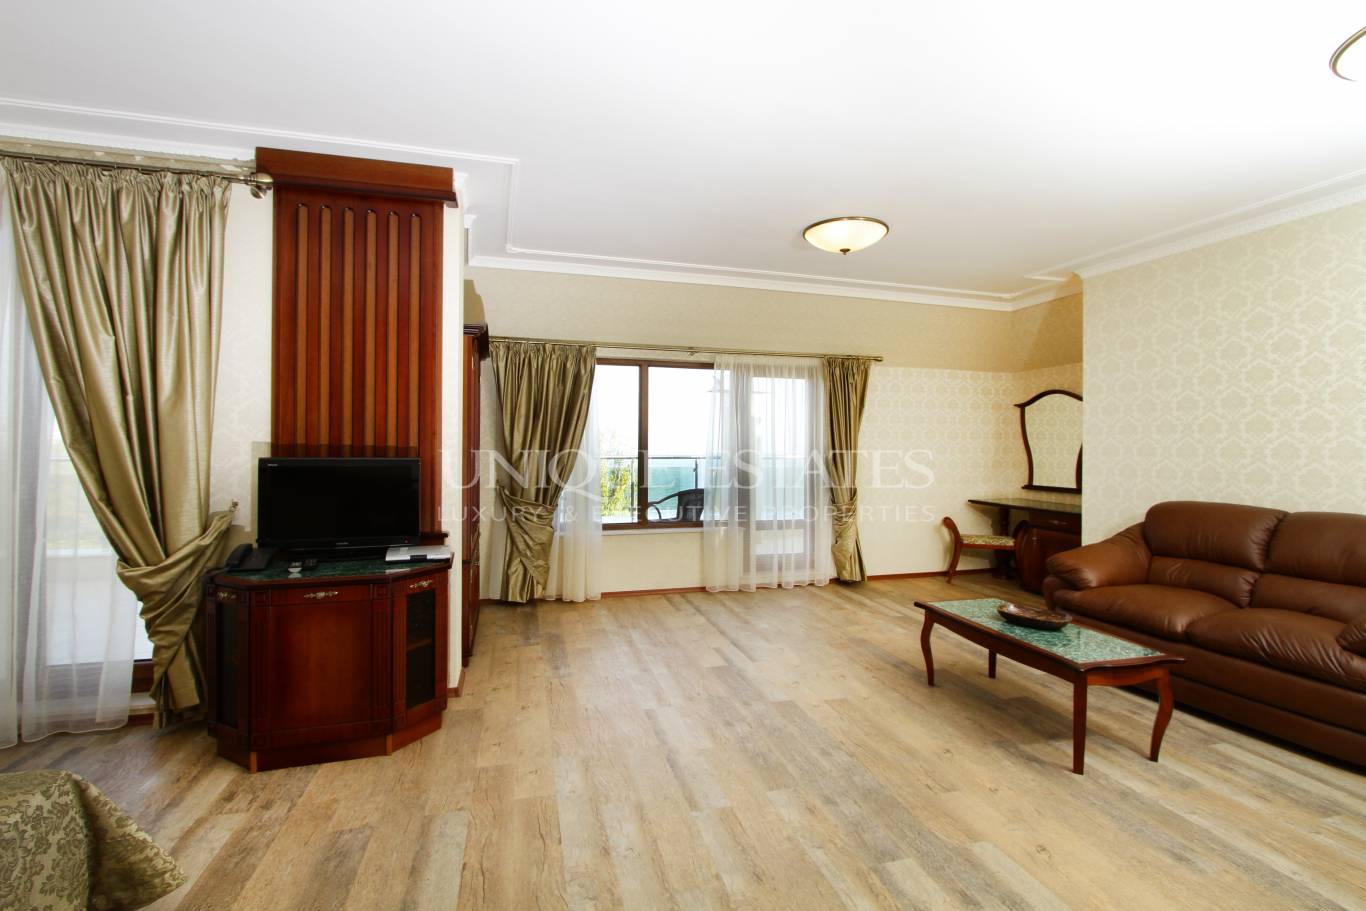 Хотел / Apartment house за продажба в Варна, к.к. Златни Пясъци - код на имота: K13678 - image 9